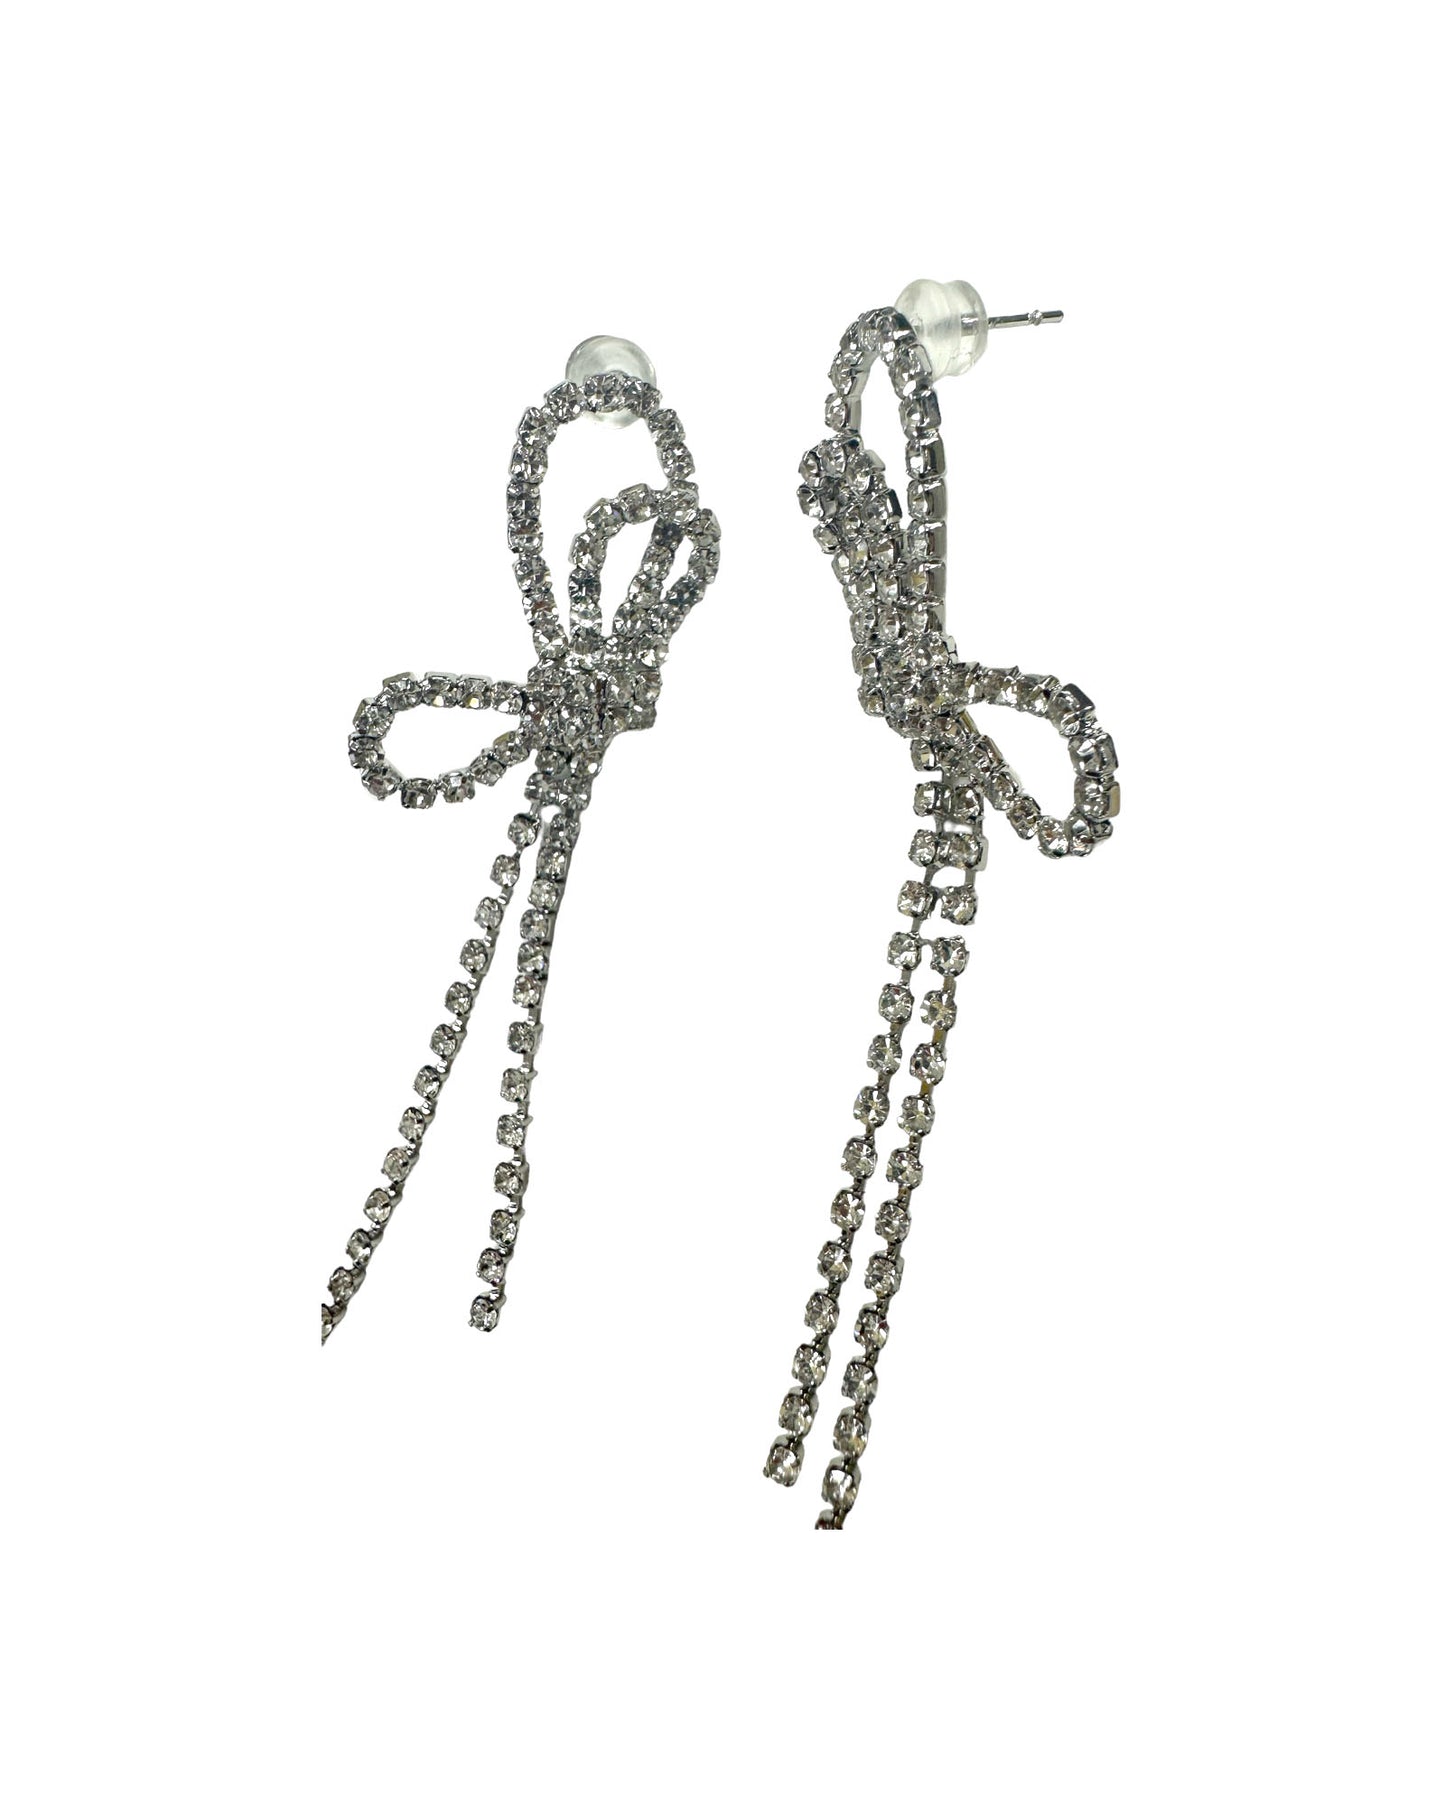 bows slings diamond earrings